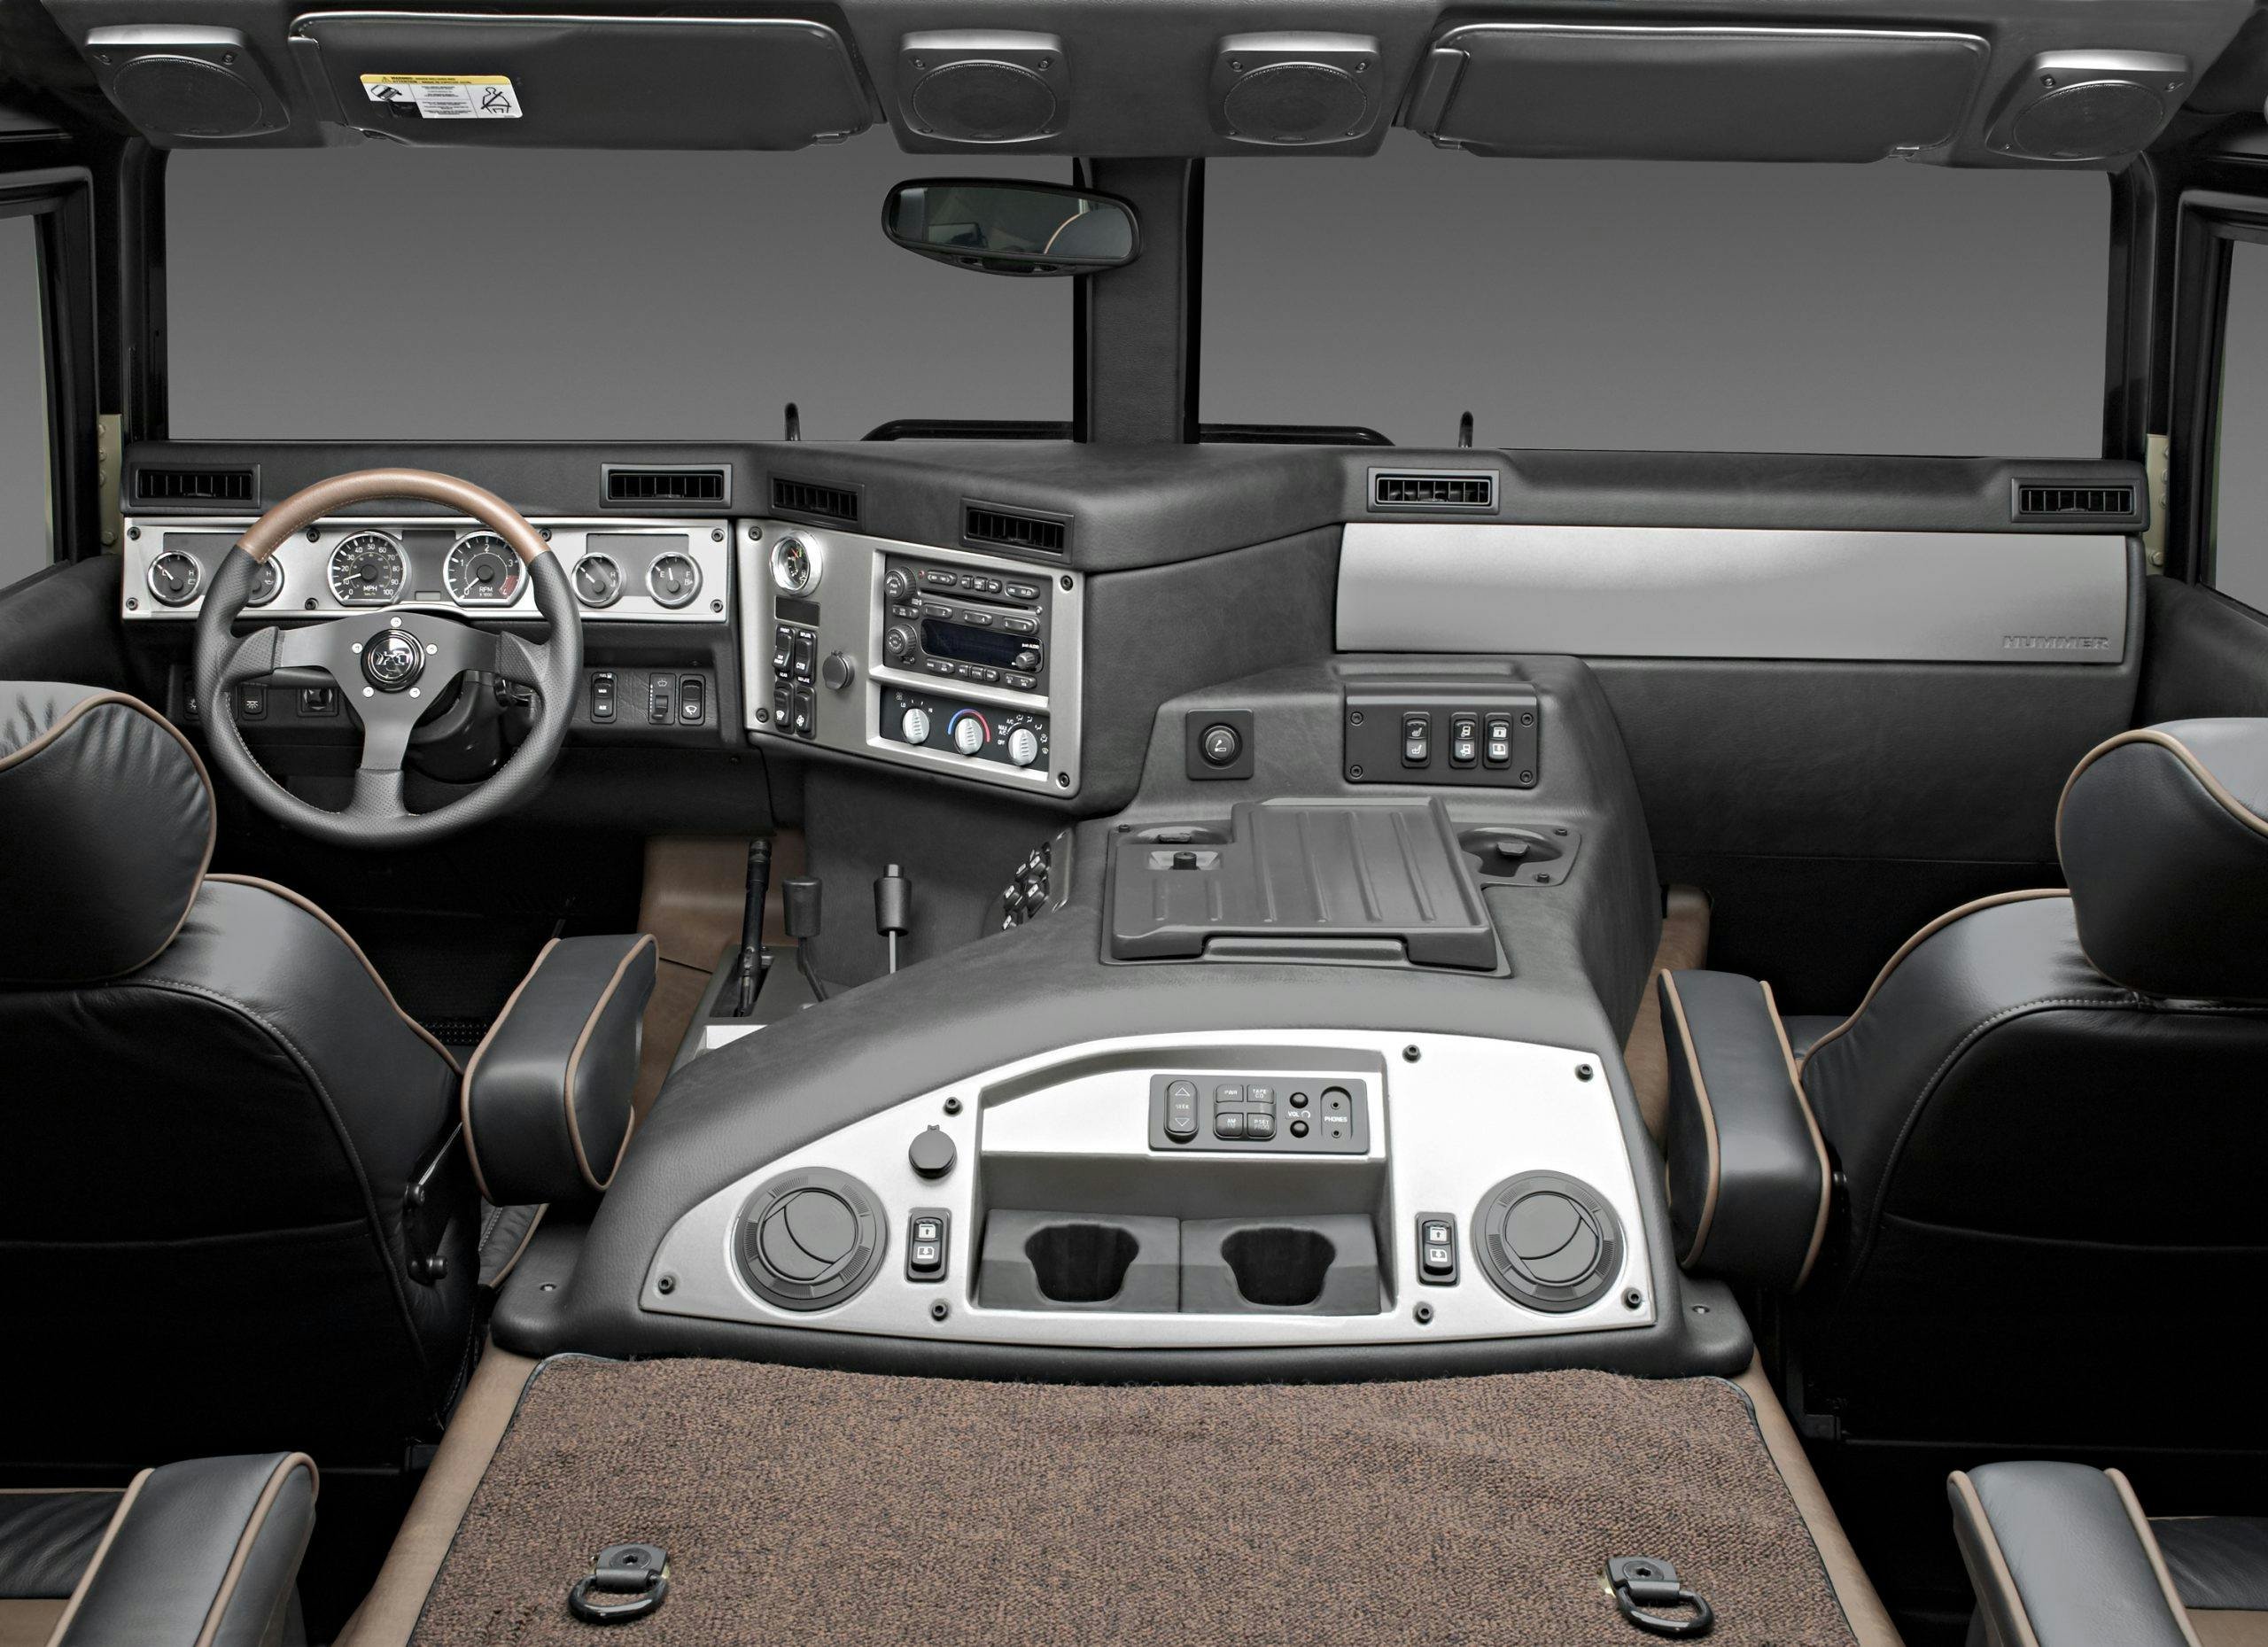 2004 Hummer H1 Interior